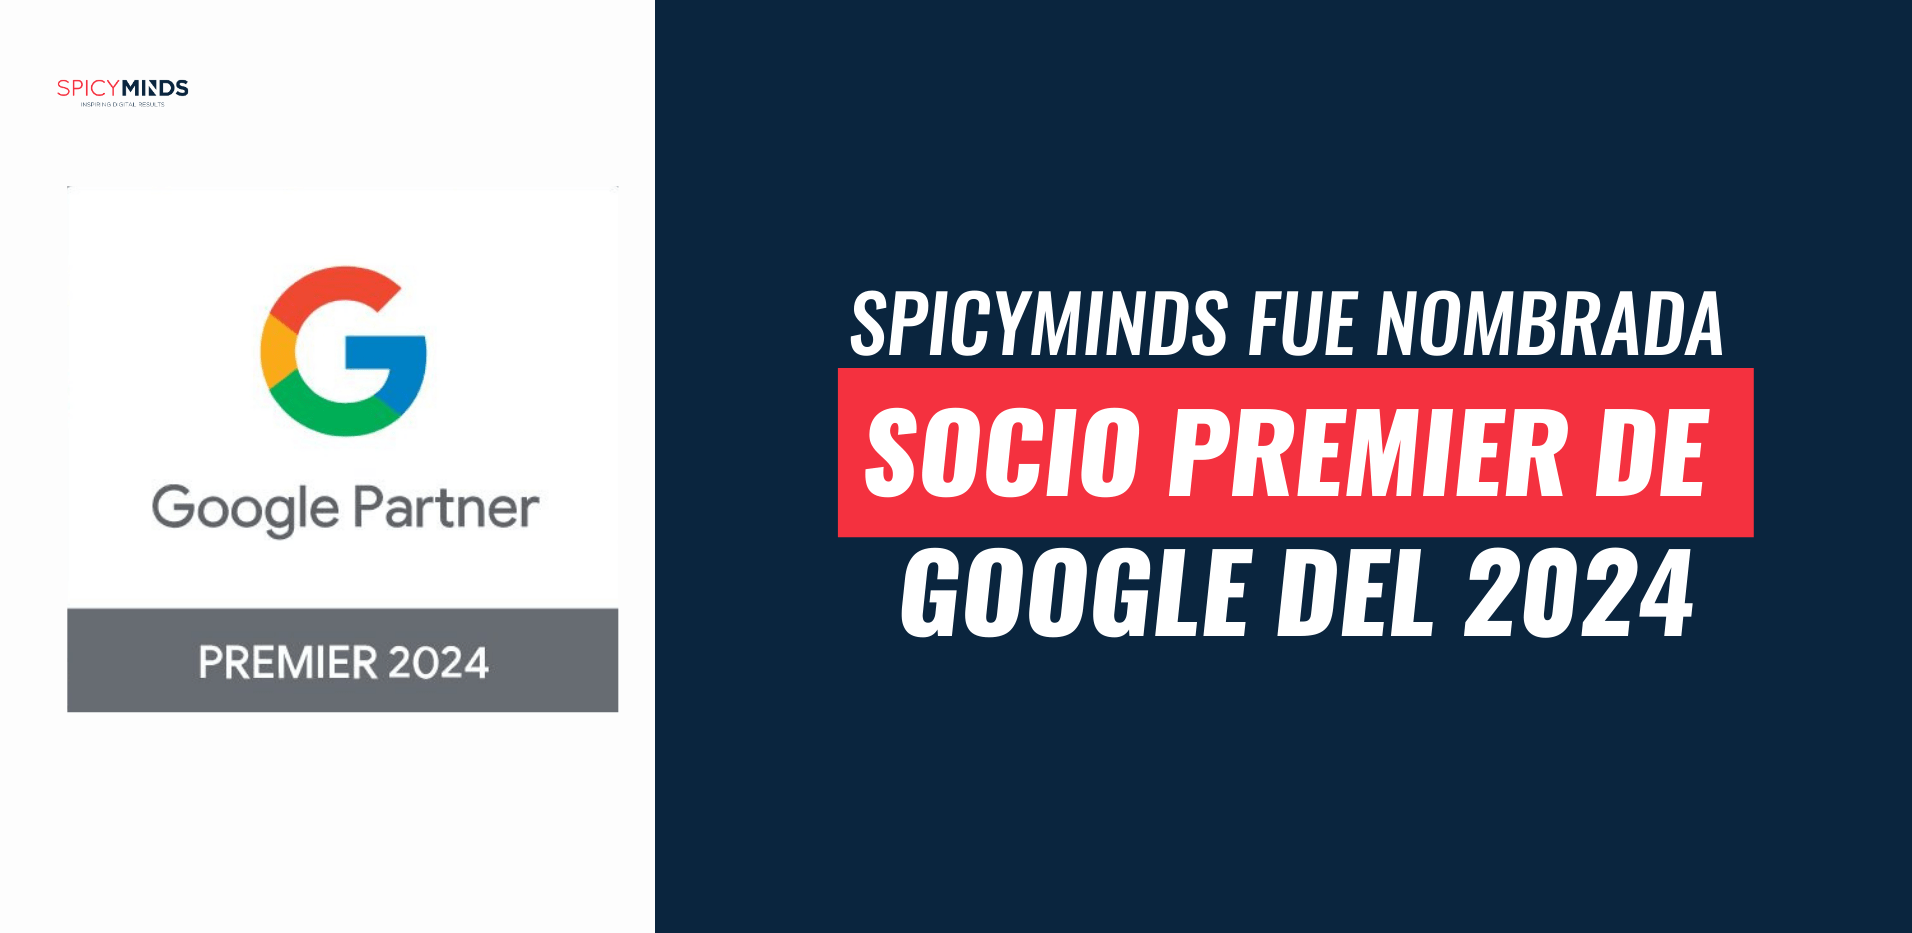 Imagen: SpicyMinds fue nombrada Socio Premier de Google del 2024.jpg